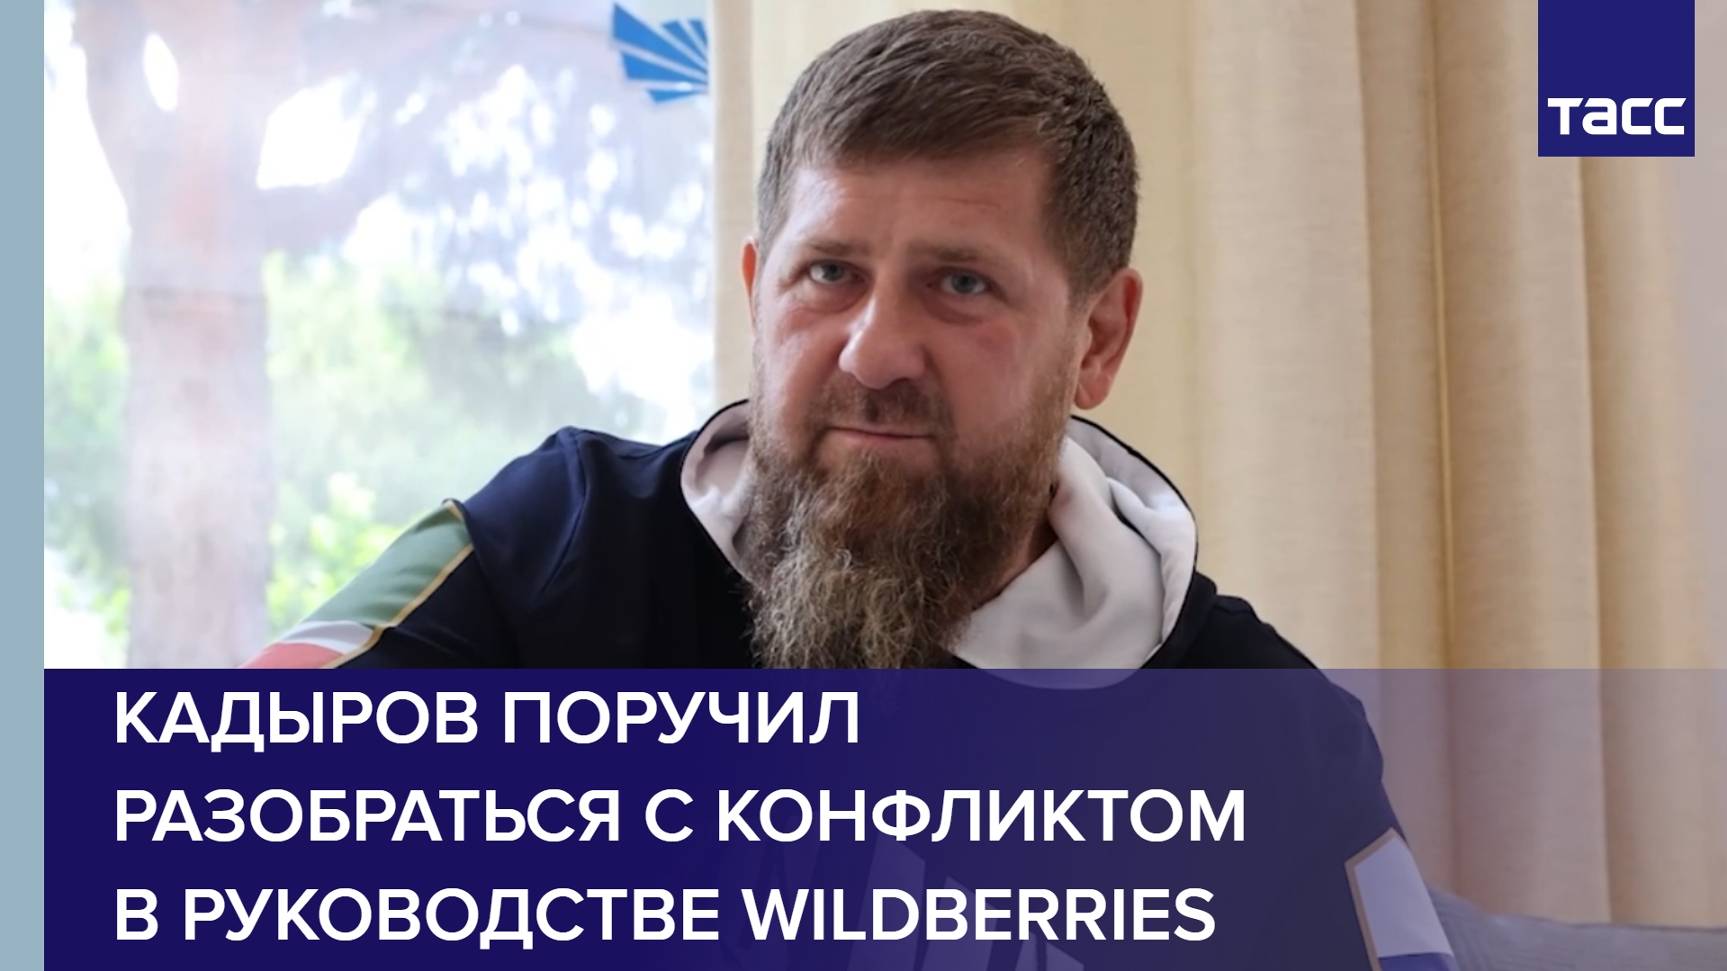 Кадыров поручил разобраться с конфликтом в руководстве Wildberries